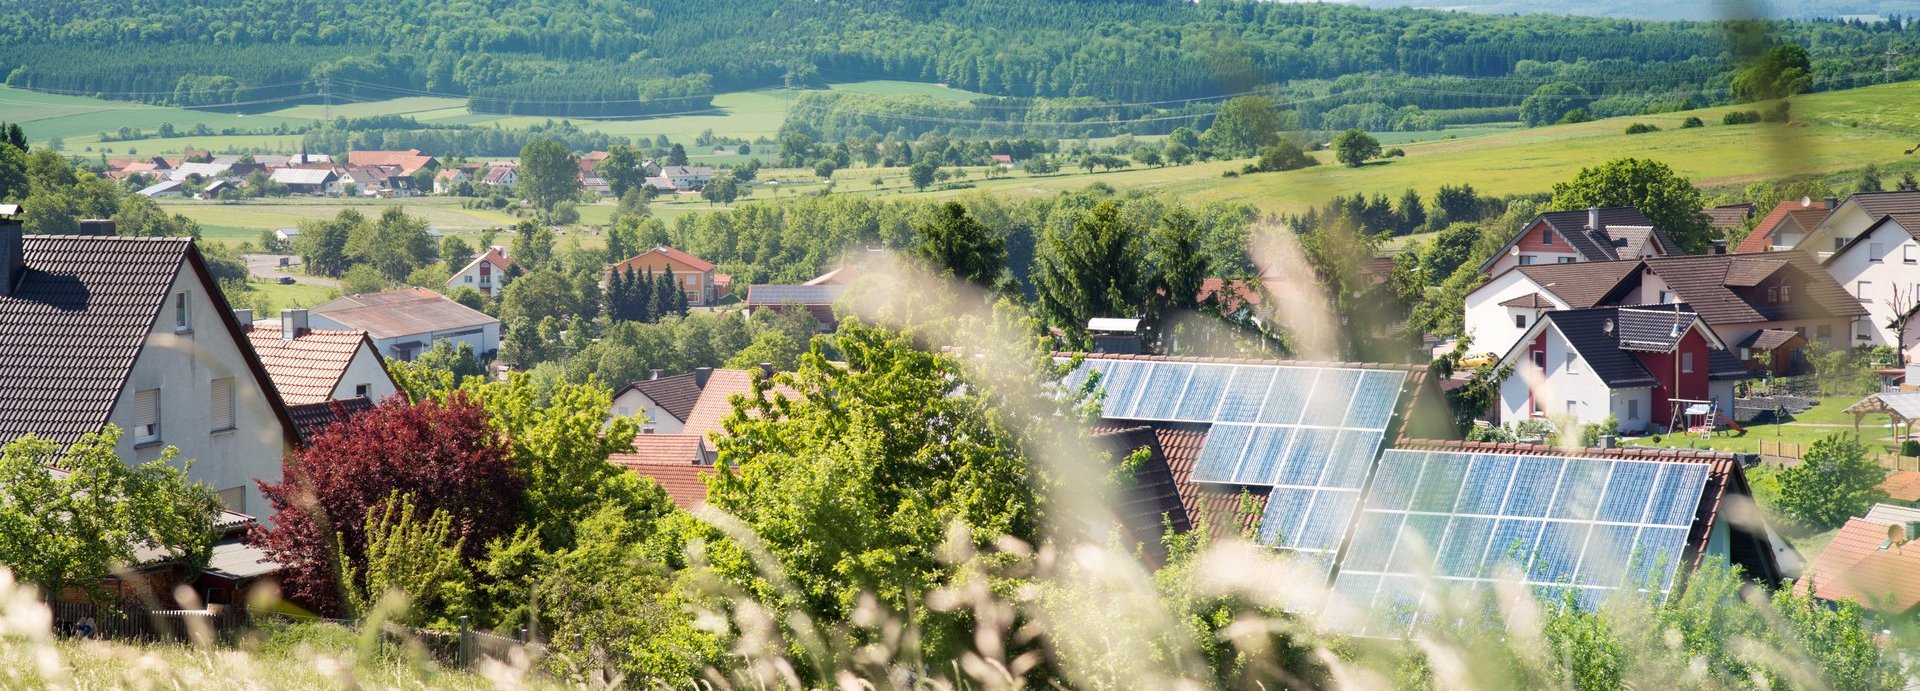 Solarzellen im Hintergrund auf einem Haus in einer Siedlung umgeben von Natur